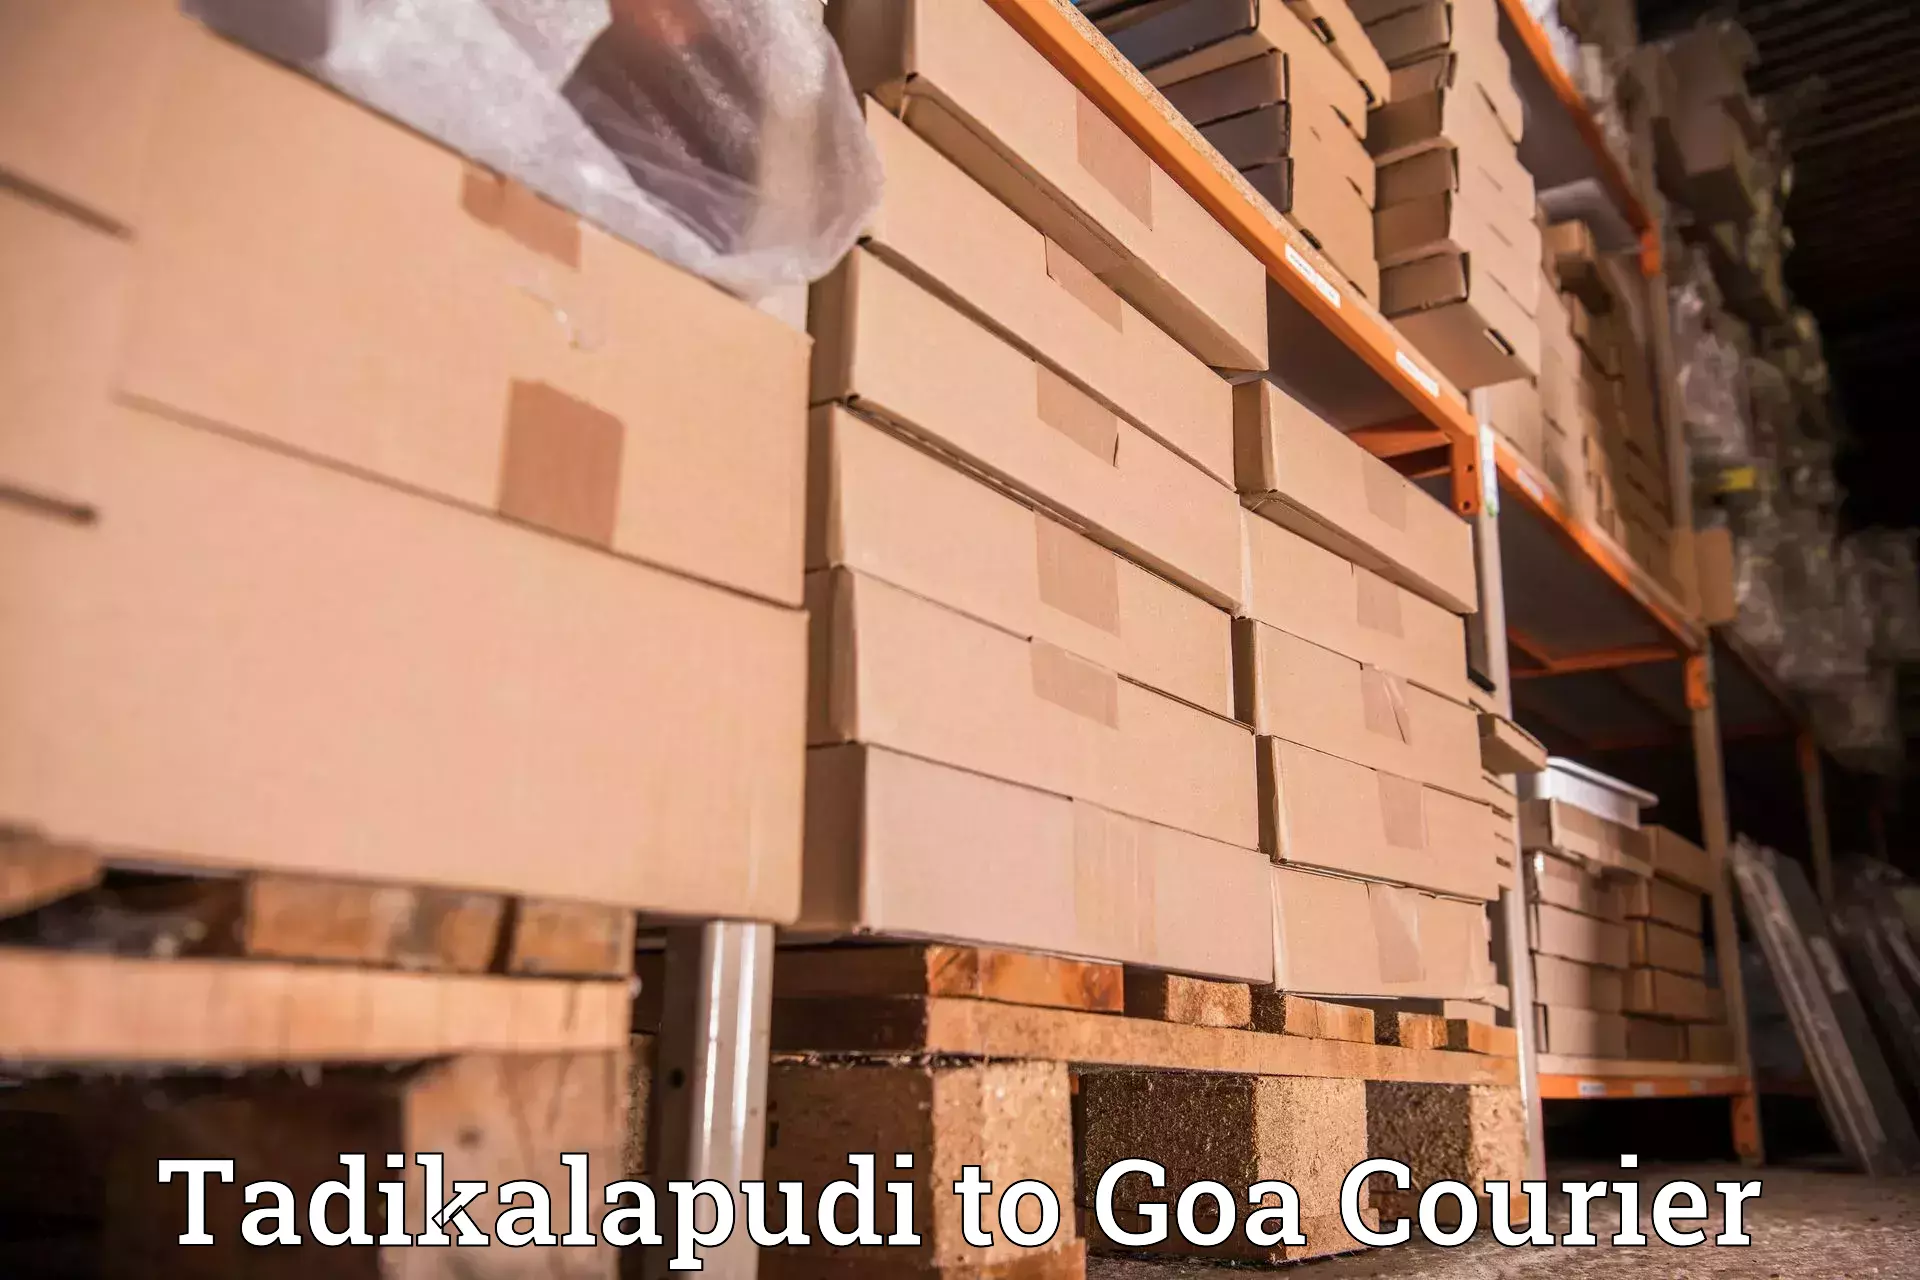 Ocean freight courier Tadikalapudi to Goa